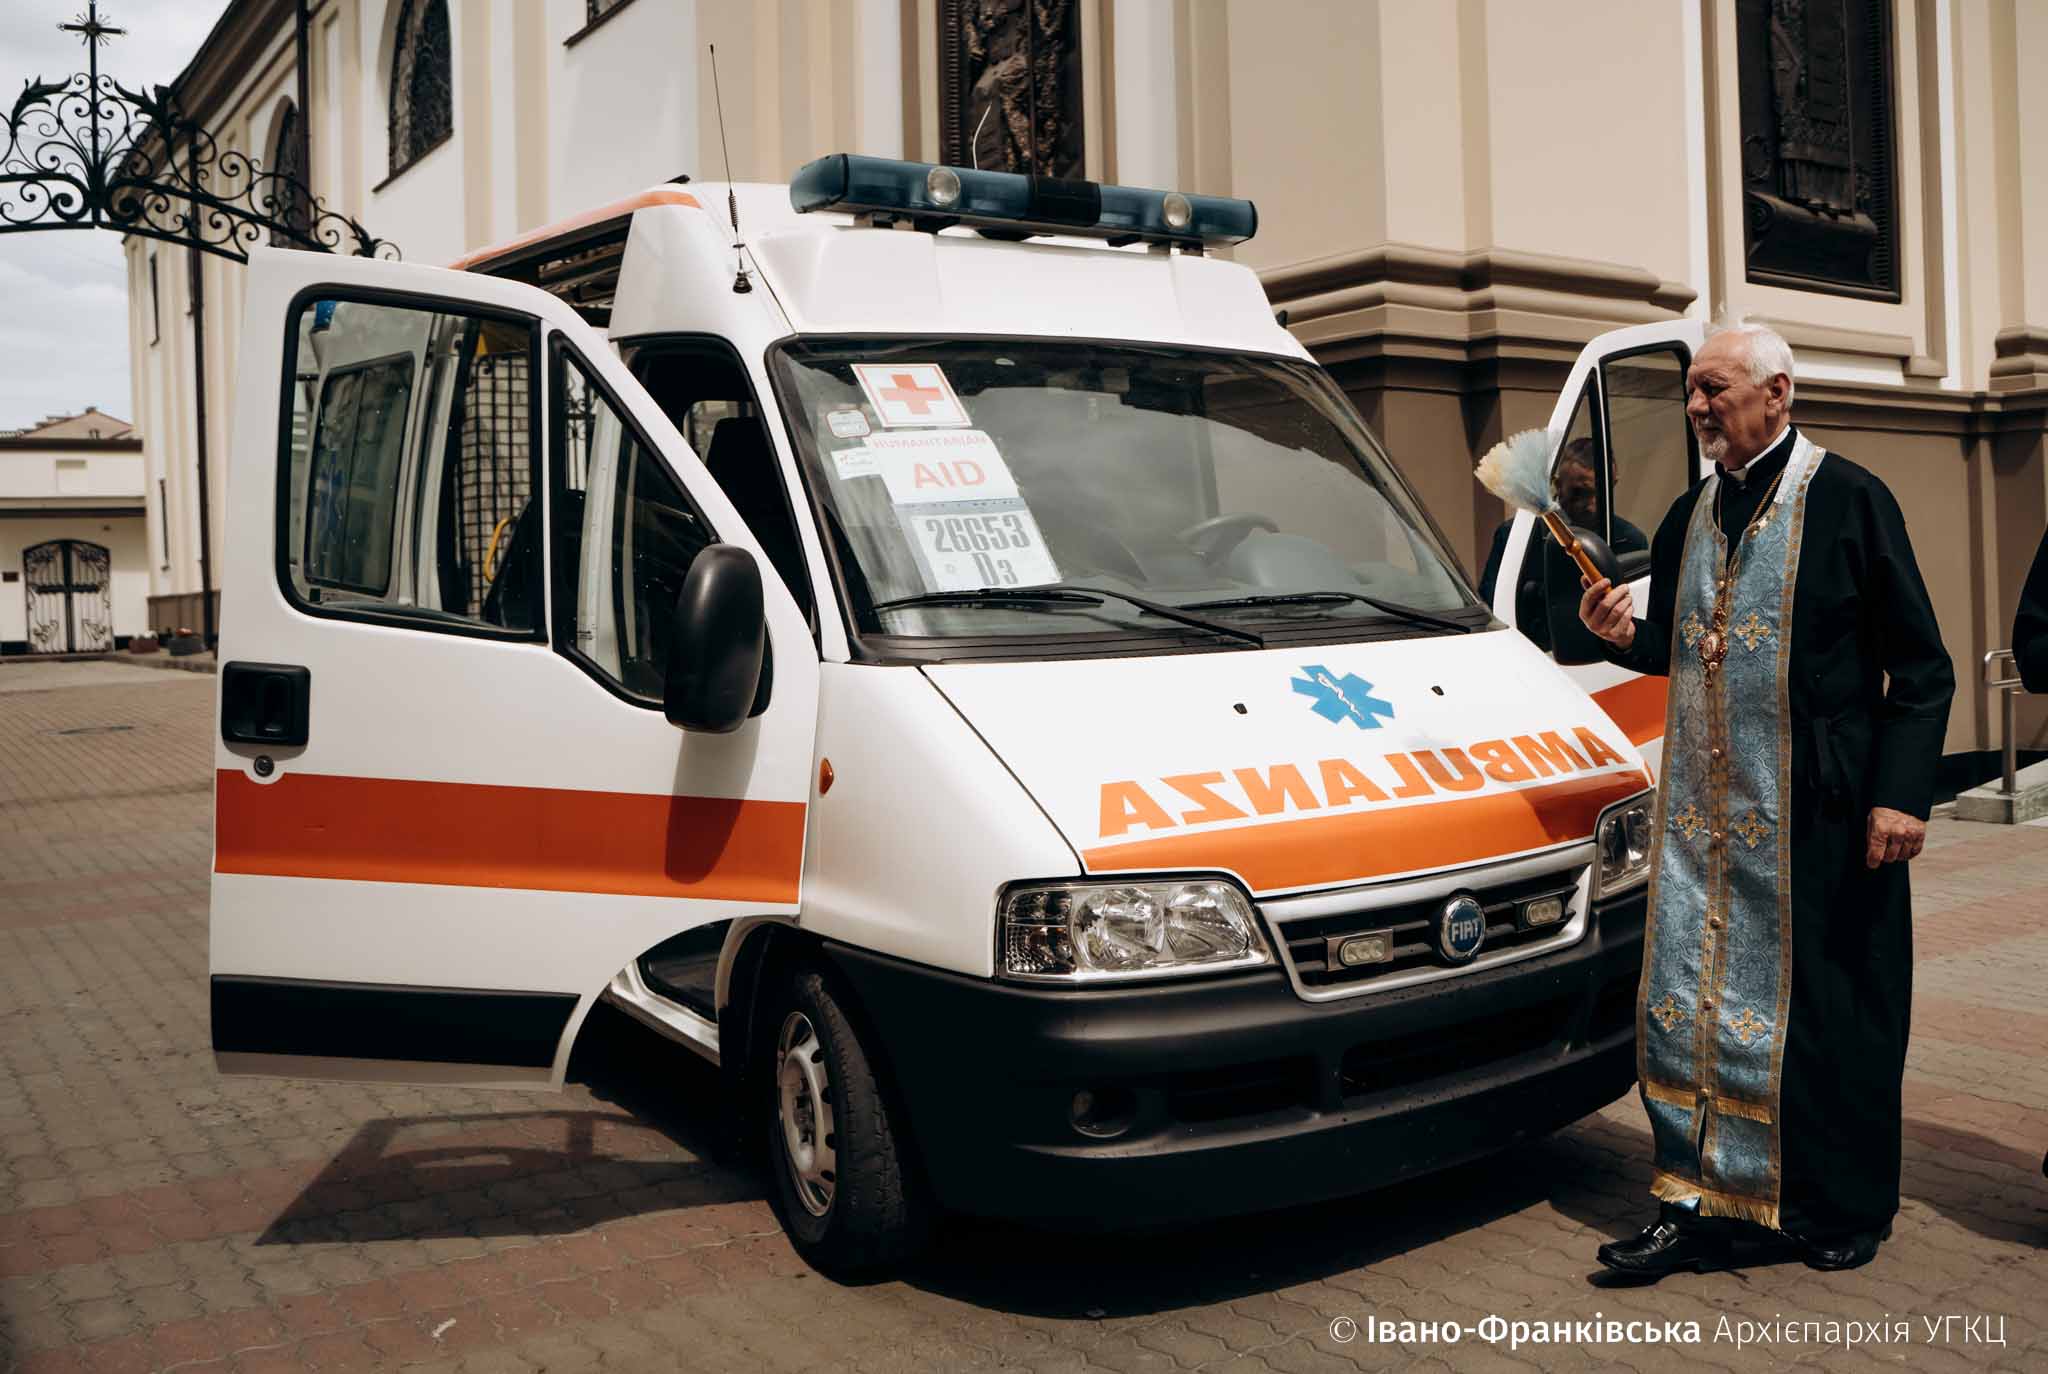 Франківська Архієпархія УГКЦ передала до Харкова автомобіль швидкої допомоги (ФОТО)